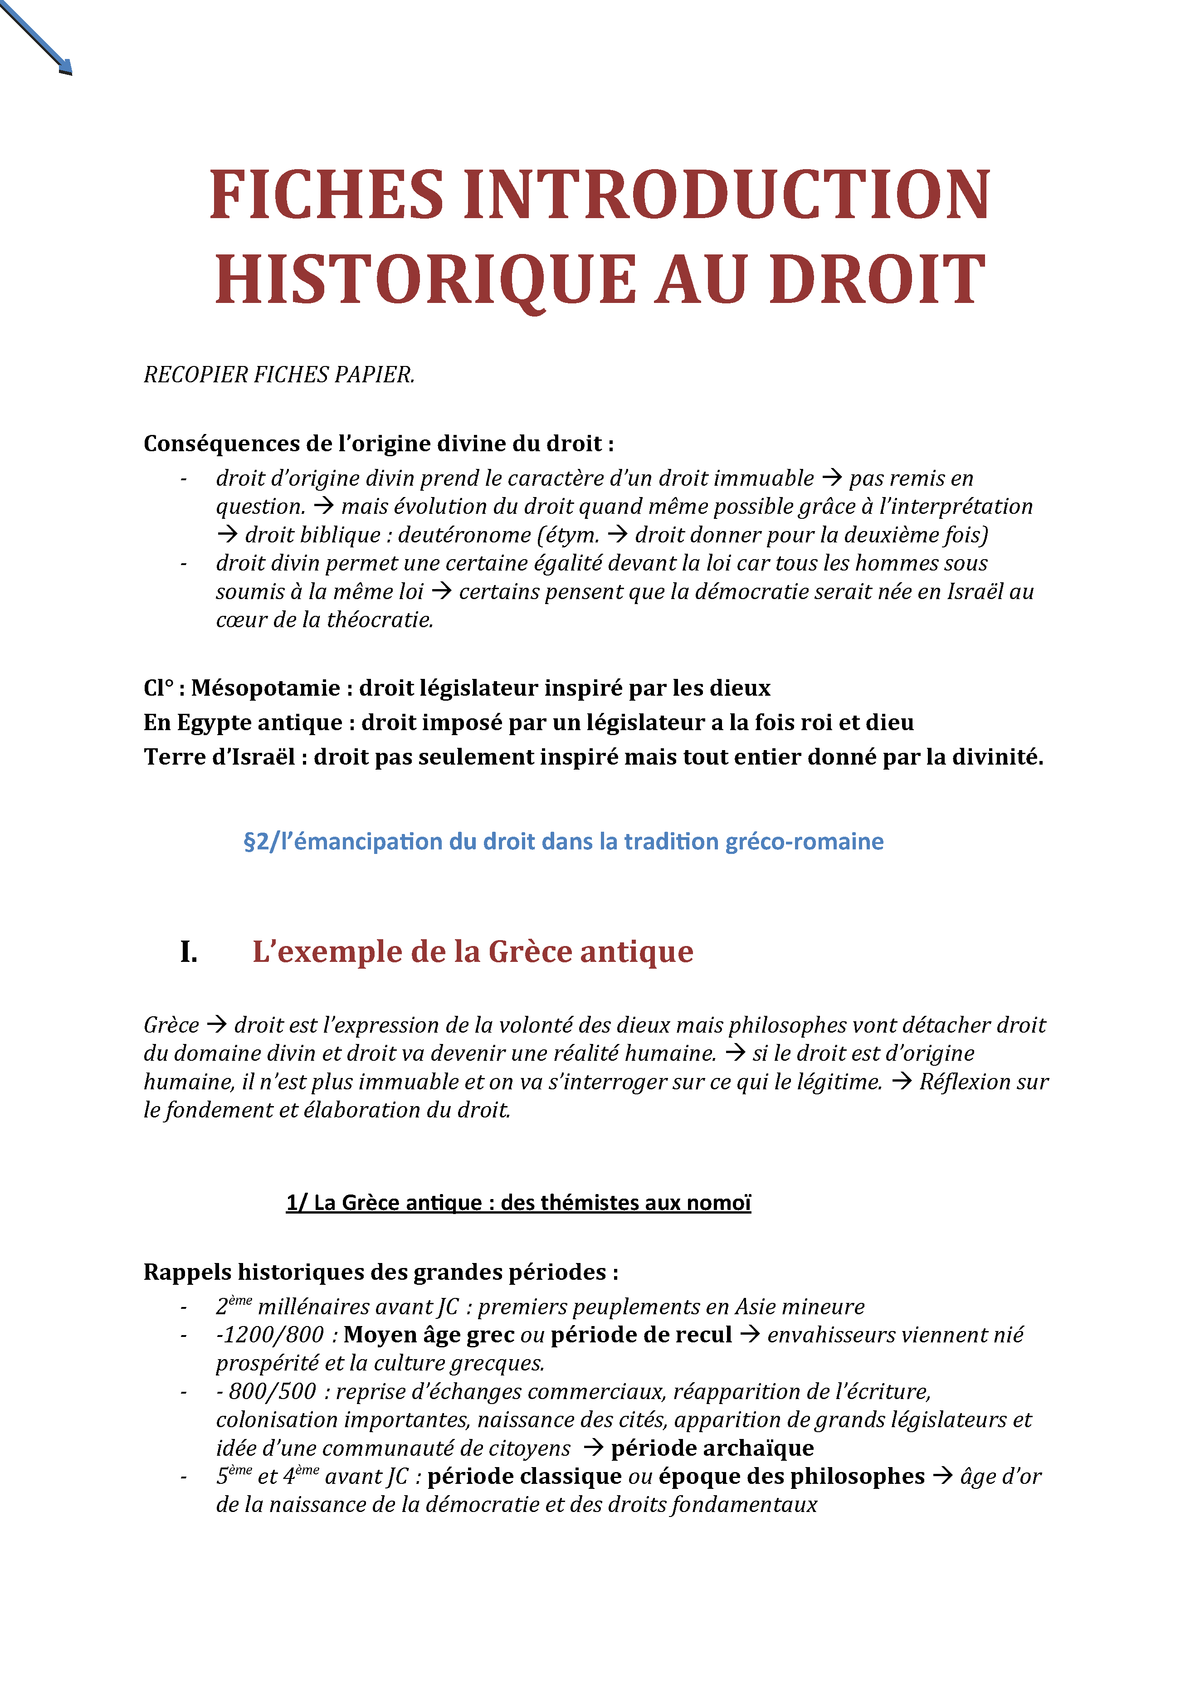 dissertation introduction historique au droit